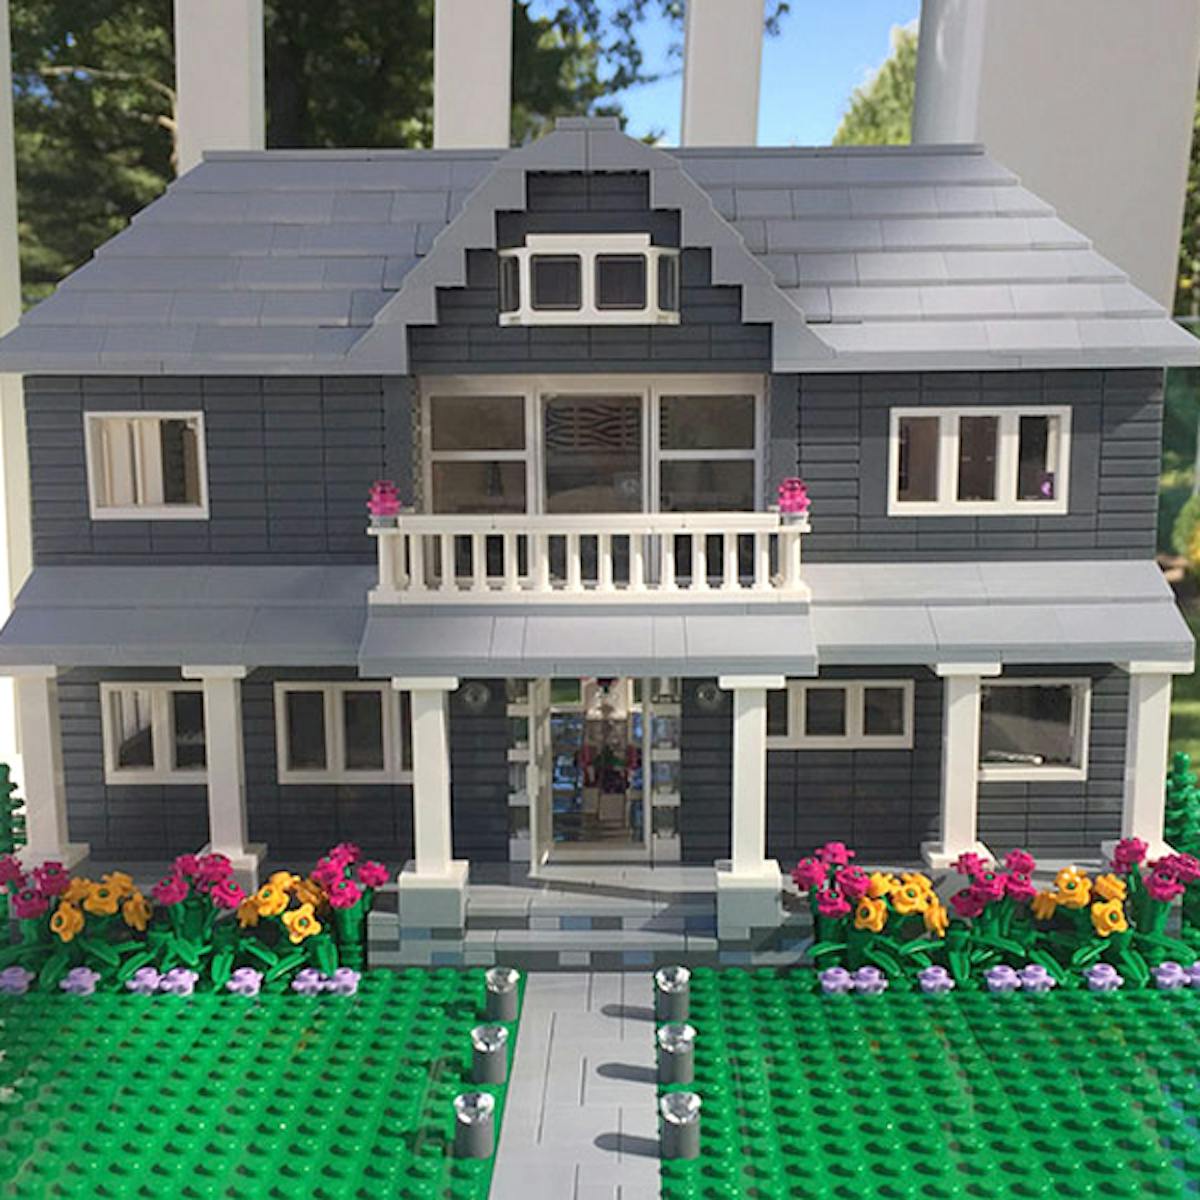 Acheter une réplique en Lego de sa maison, c'est possible !